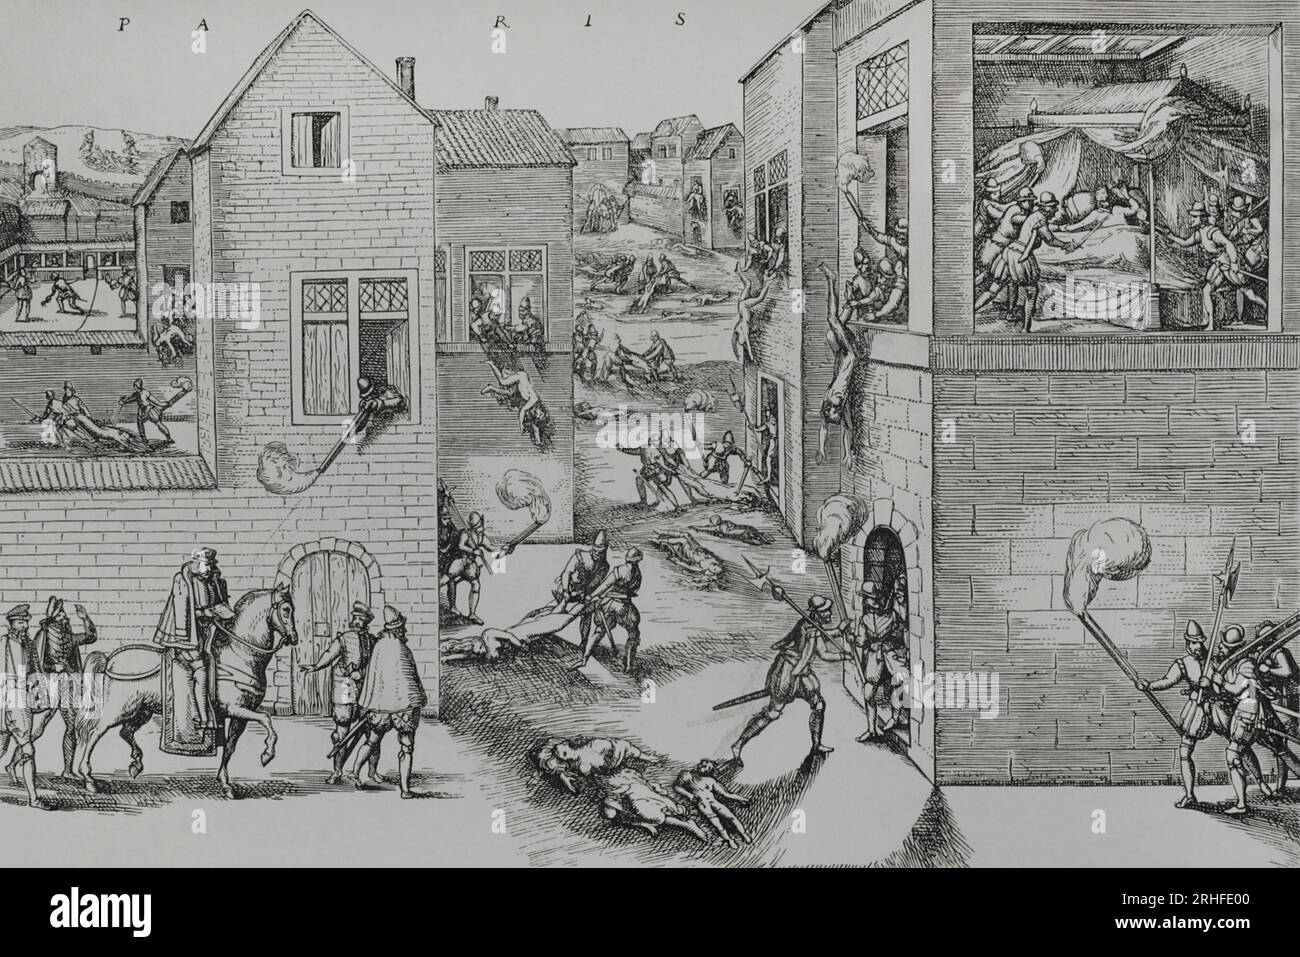 Tentative d'assassinat de Gaspar de Coligny (1519-1572) par une attaque le 22 août 1572. C'était le déclencheur du massacre de St. Fête de Bartholomée à Paris dans la nuit du 23 au 24 août 1572. Gravure du 19e siècle d'après un original allemand, représentant une des feuilles supplémentaires de la collection gravée par Jean Tortorel et Jacques Perrissin. Ci-dessous à gauche est représenté l'attaque contre Coligny par le feu d'arquebus, effectué par Maurevert depuis une fenêtre, et sa mort lors du massacre. Coligny est tué dans sa maison par Besme, un des officiers allemands du duc Henri de guise. H Banque D'Images